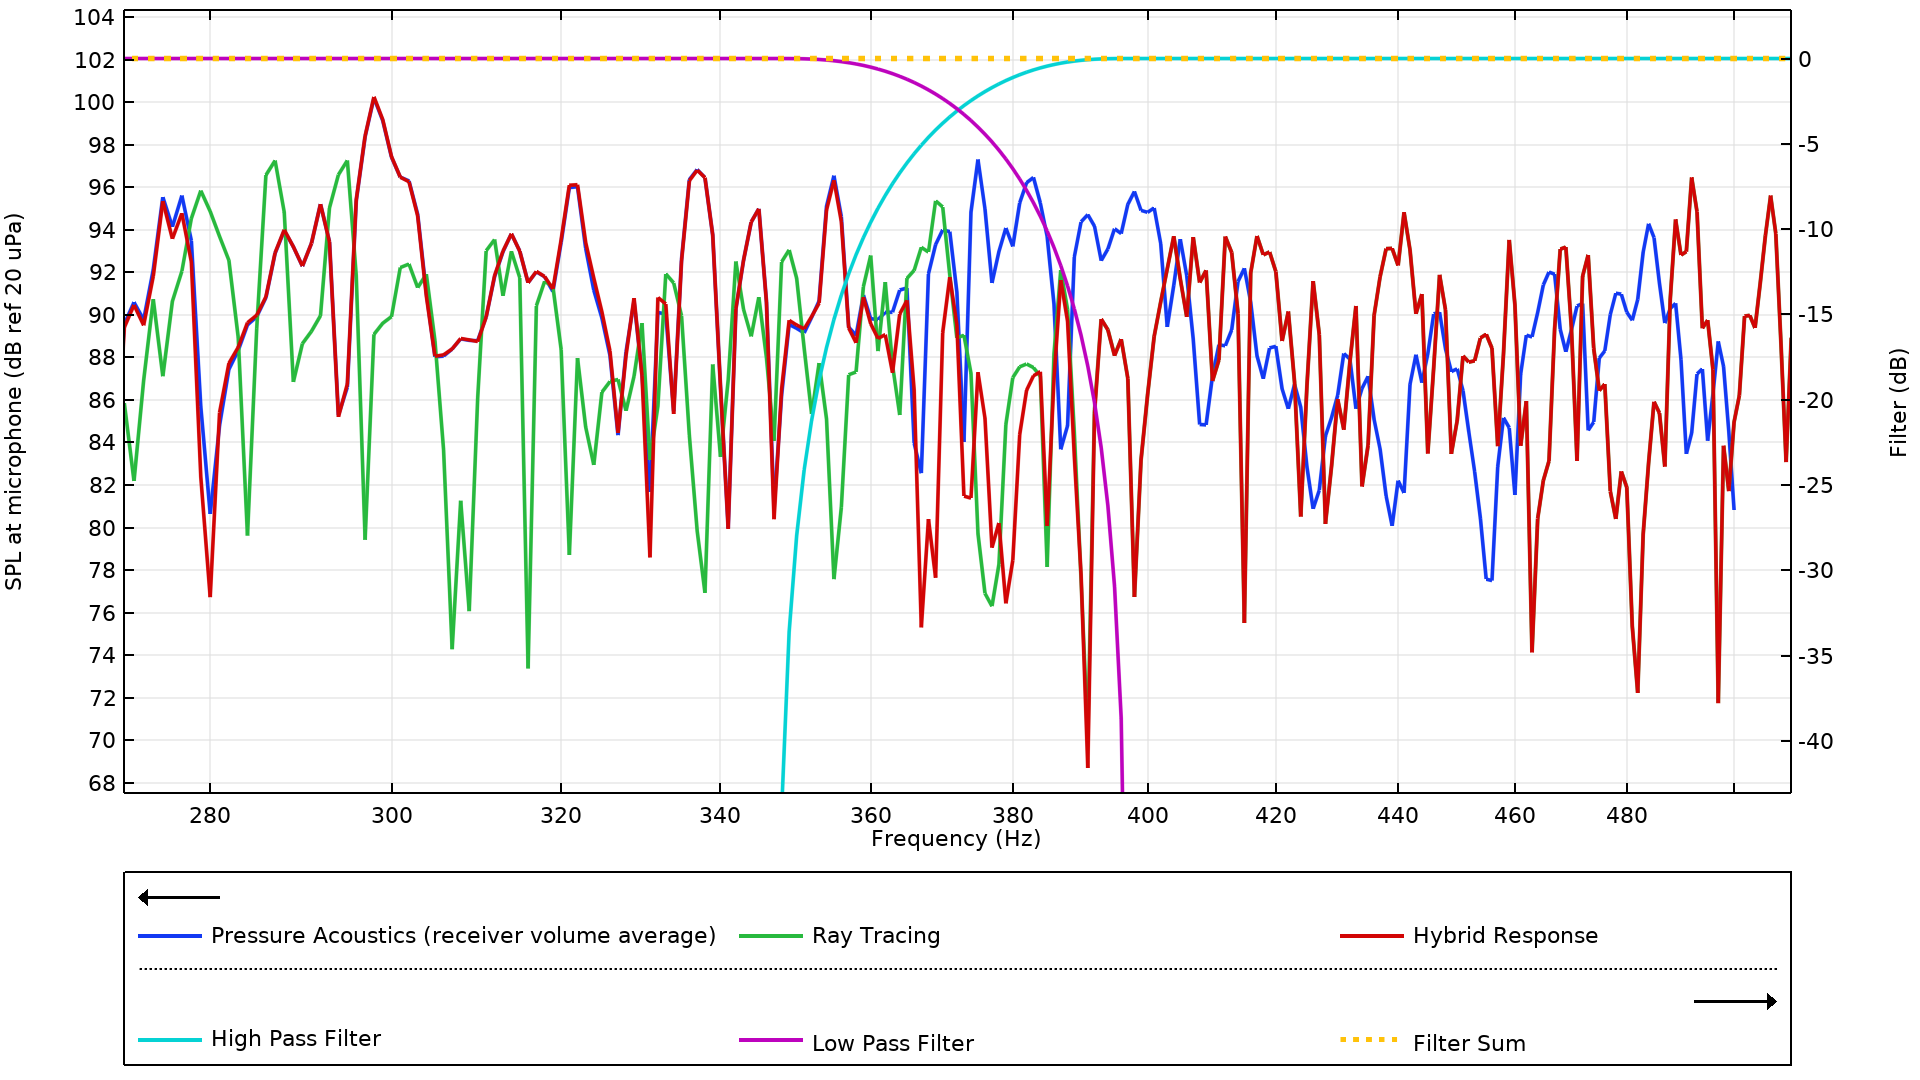 X轴为频率（Hz），Y轴为麦克风处的声压级（参考分贝为20 uPa）的一维图。重点显示一个黑色的箭头指向左边的蓝线、绿线和红线，它们分别代表压力声学（接收器体积平均值）、射线追踪和混合响应。还重点显示了一个黑色的箭头，指向浅蓝色箭头、紫色箭头和黄色的虚线，它们分别代表高通滤波器、低通滤波器和滤波器总和。